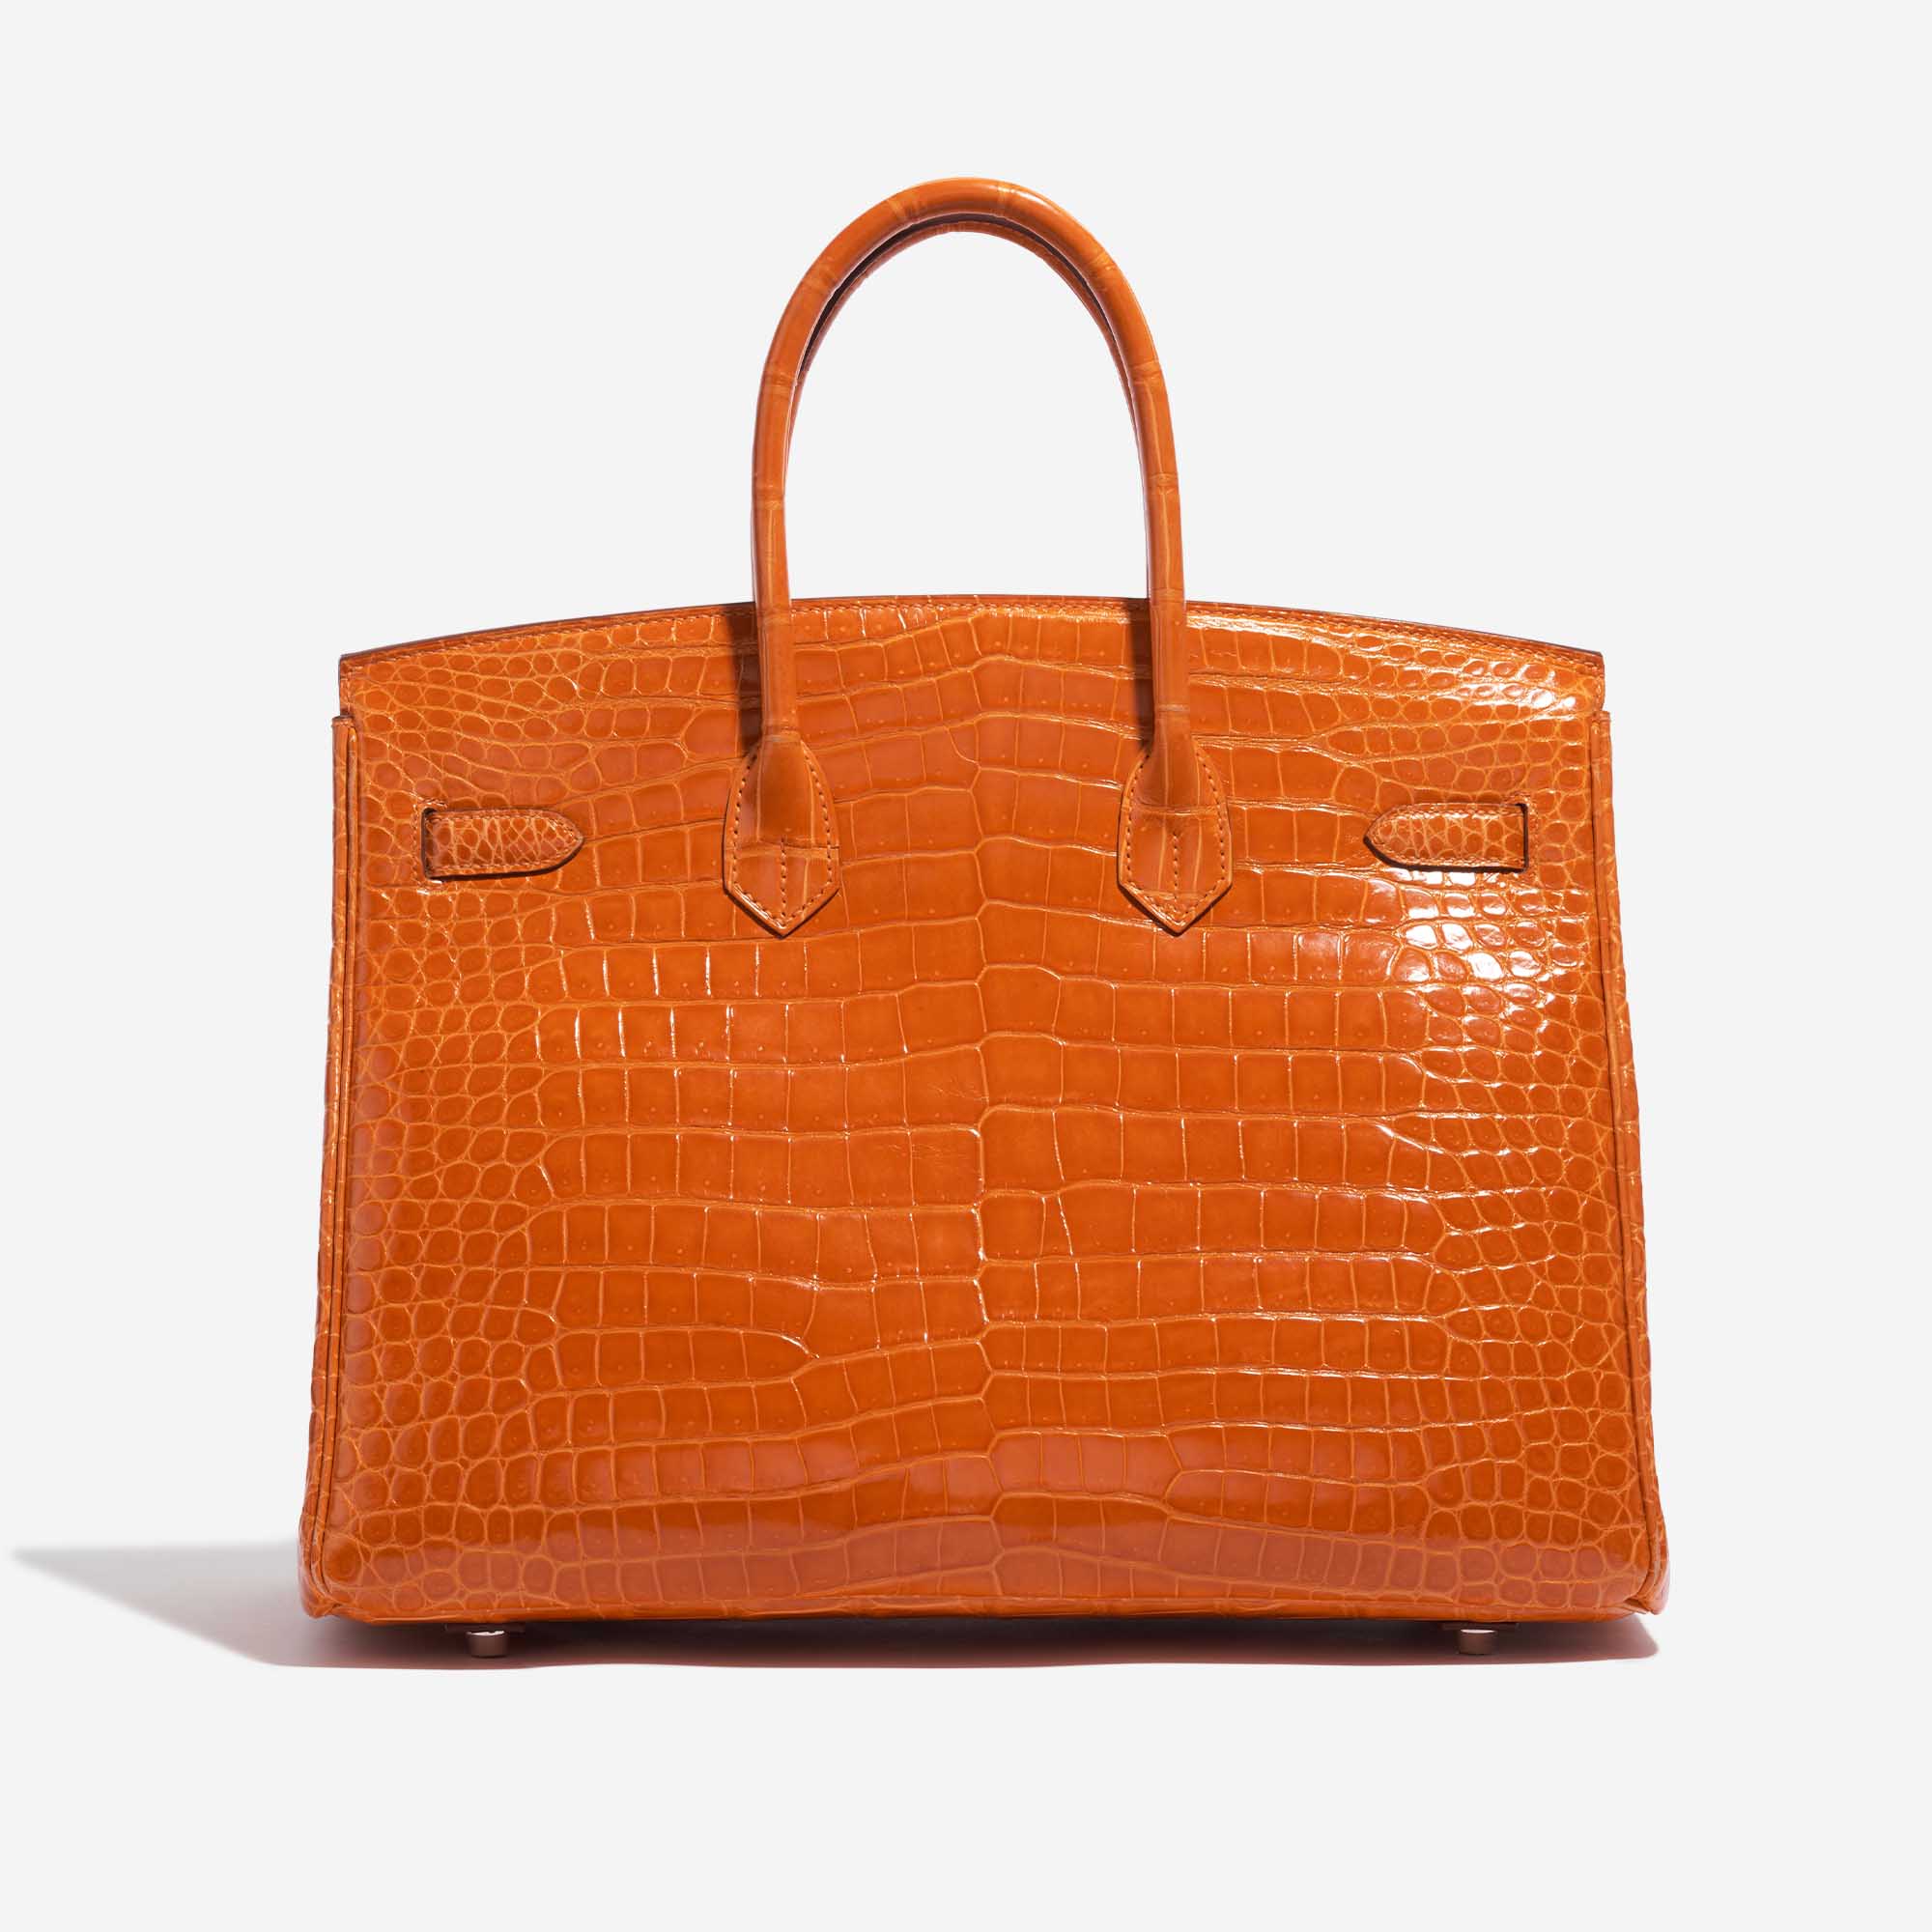 Pre-owned Hermès bag Birkin 35 Porosus Crocodile Pain d’épice Orange Back | Sell your designer bag on Saclab.com